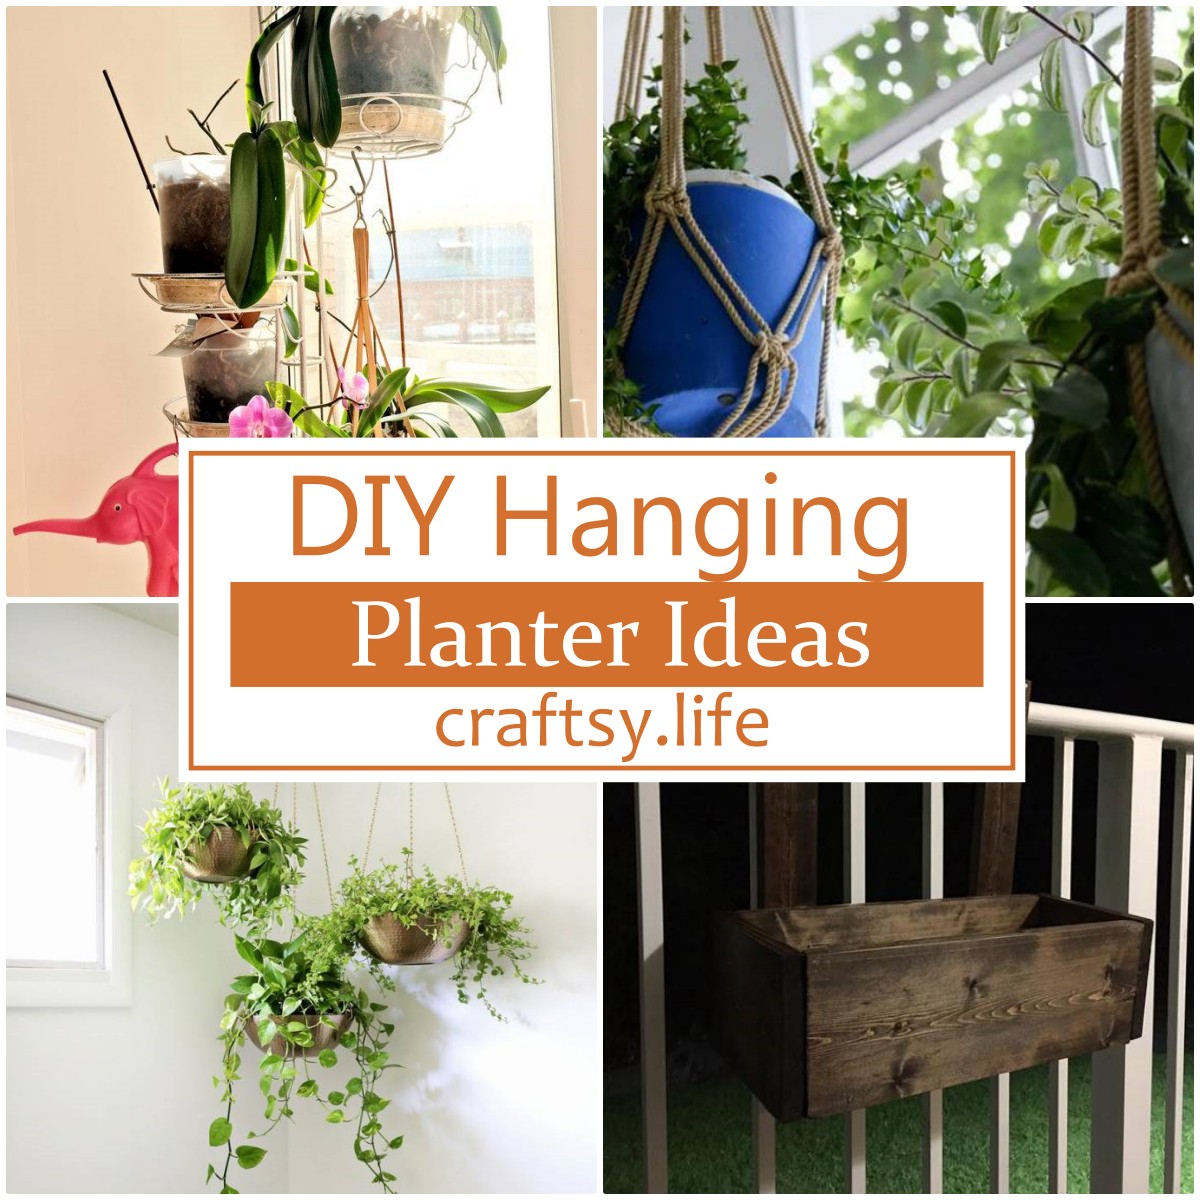 DIY Hanging Planter Ideas